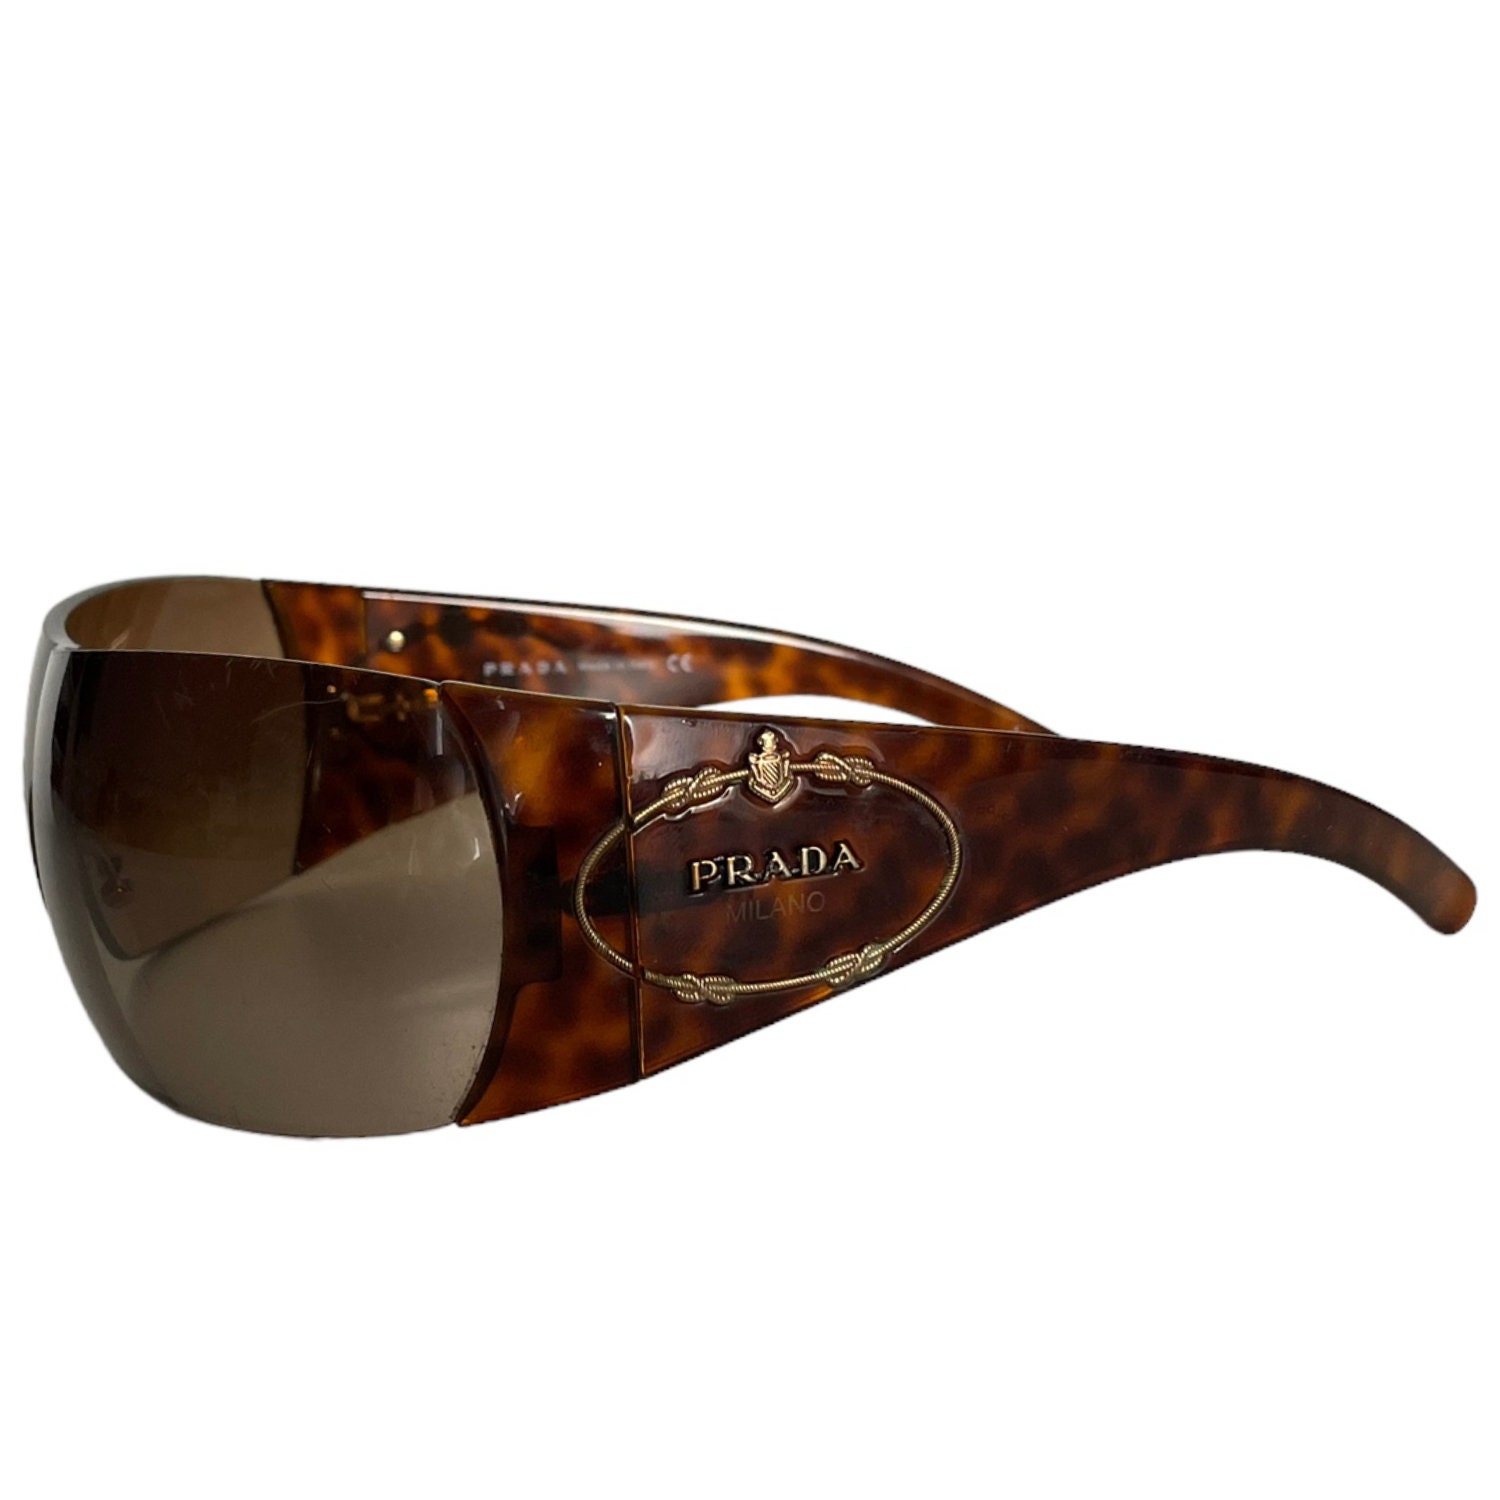 Prada Sunglasses Authentic Prada Logo Wraparound Sunglasses in